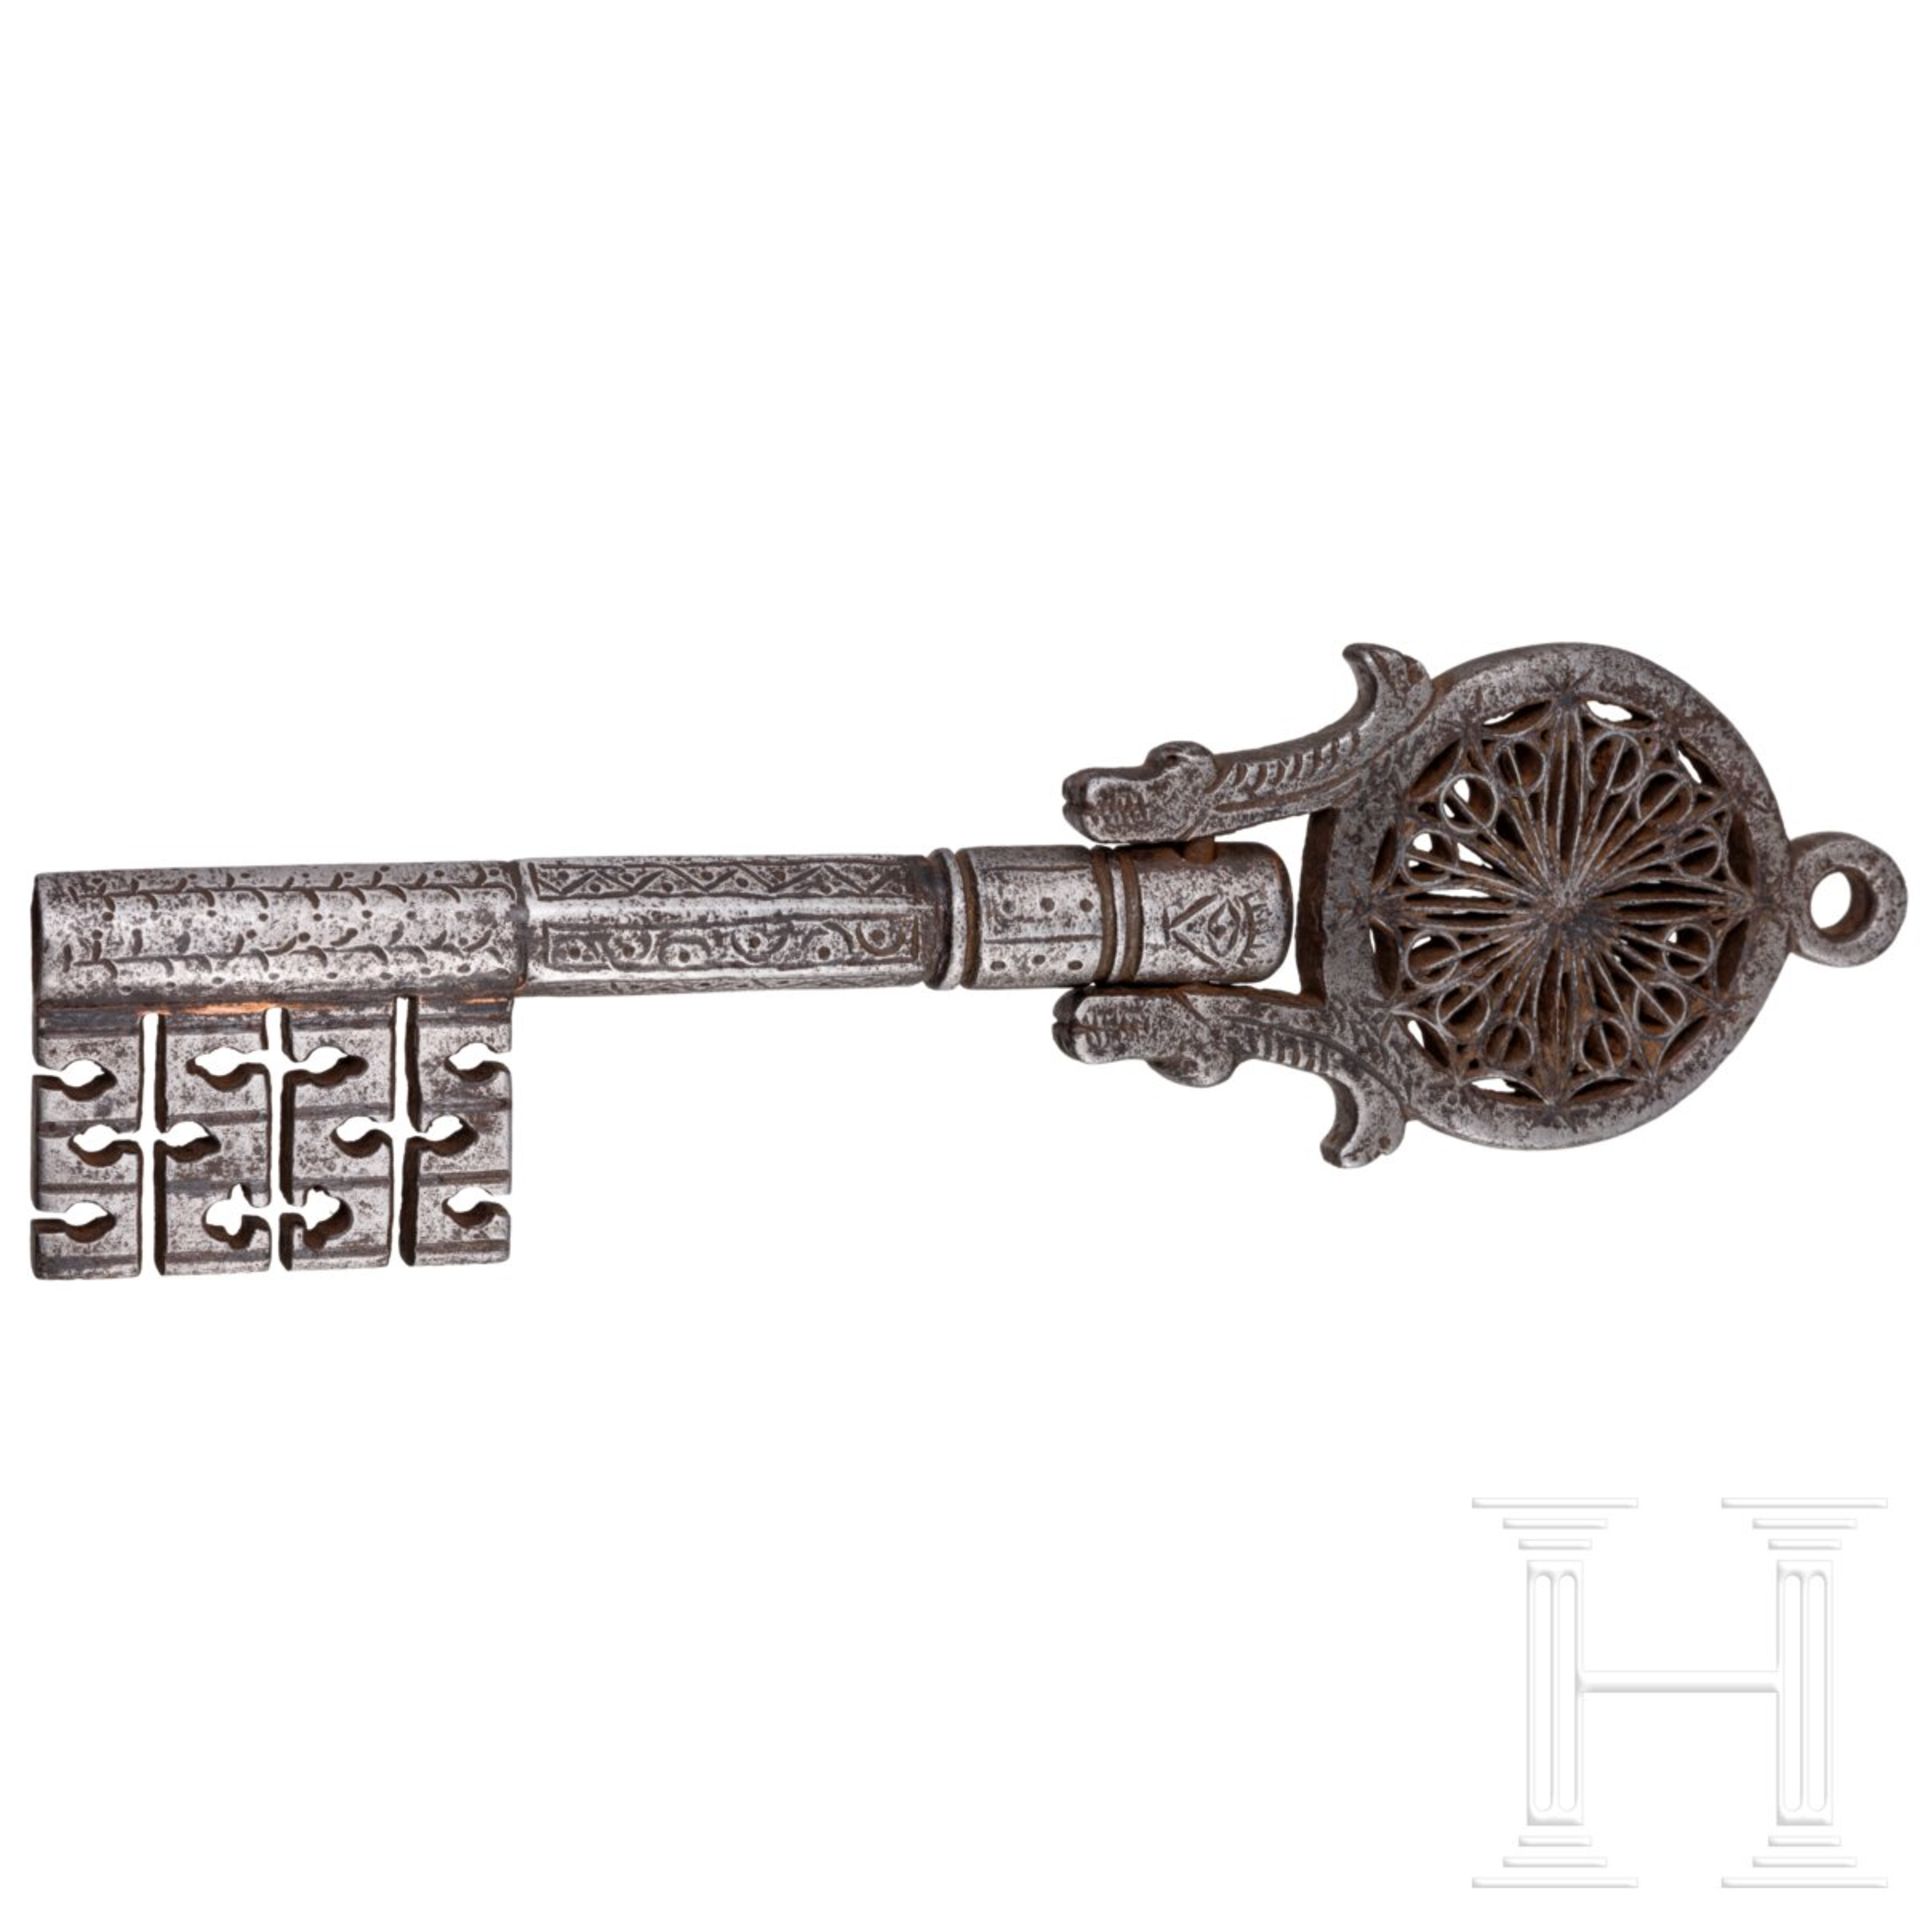 Großer Klappschlüssel im venezianischen Stil des 16./17. Jhdts., Italien, um 1900 - Bild 2 aus 3